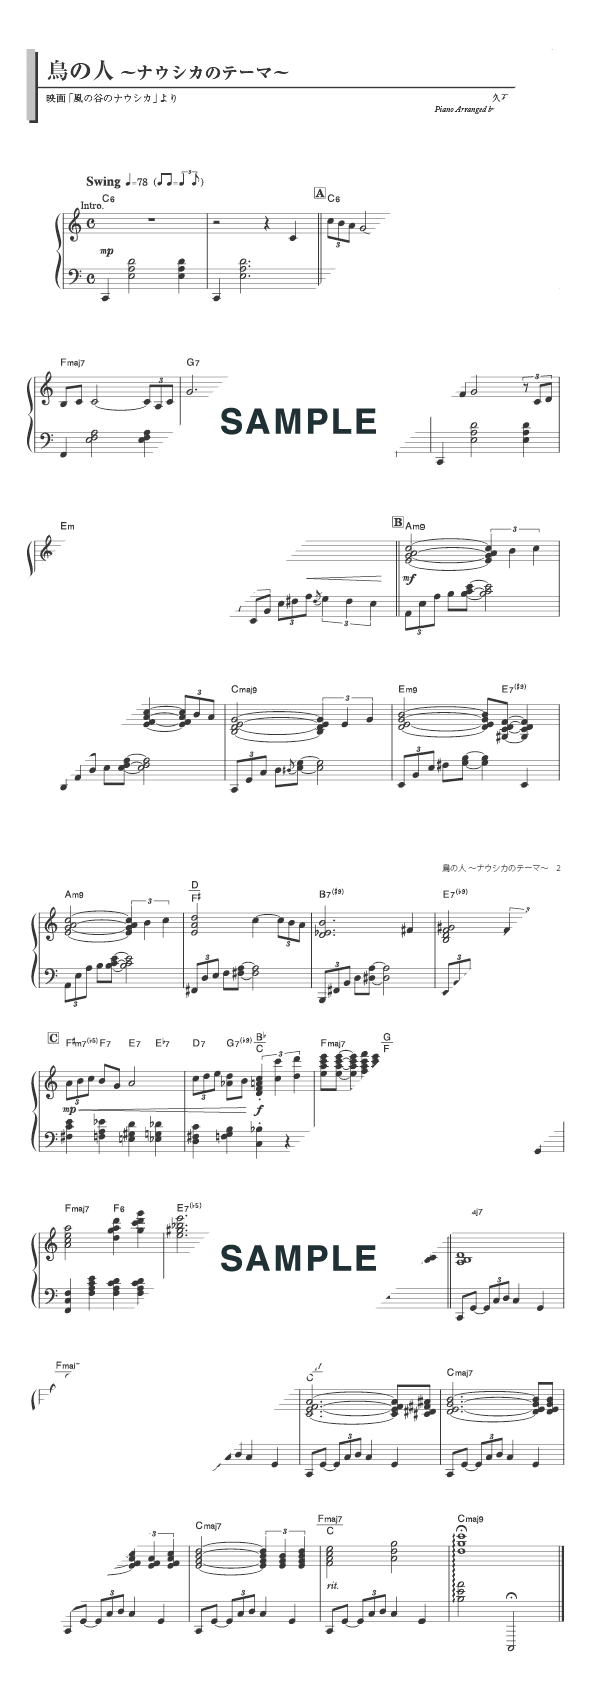 楽譜 鳥の人 ナウシカのテーマ ジャズアレンジ 久石 譲 ピアノ ソロ譜 初中級 デプロmp 楽譜 Elise